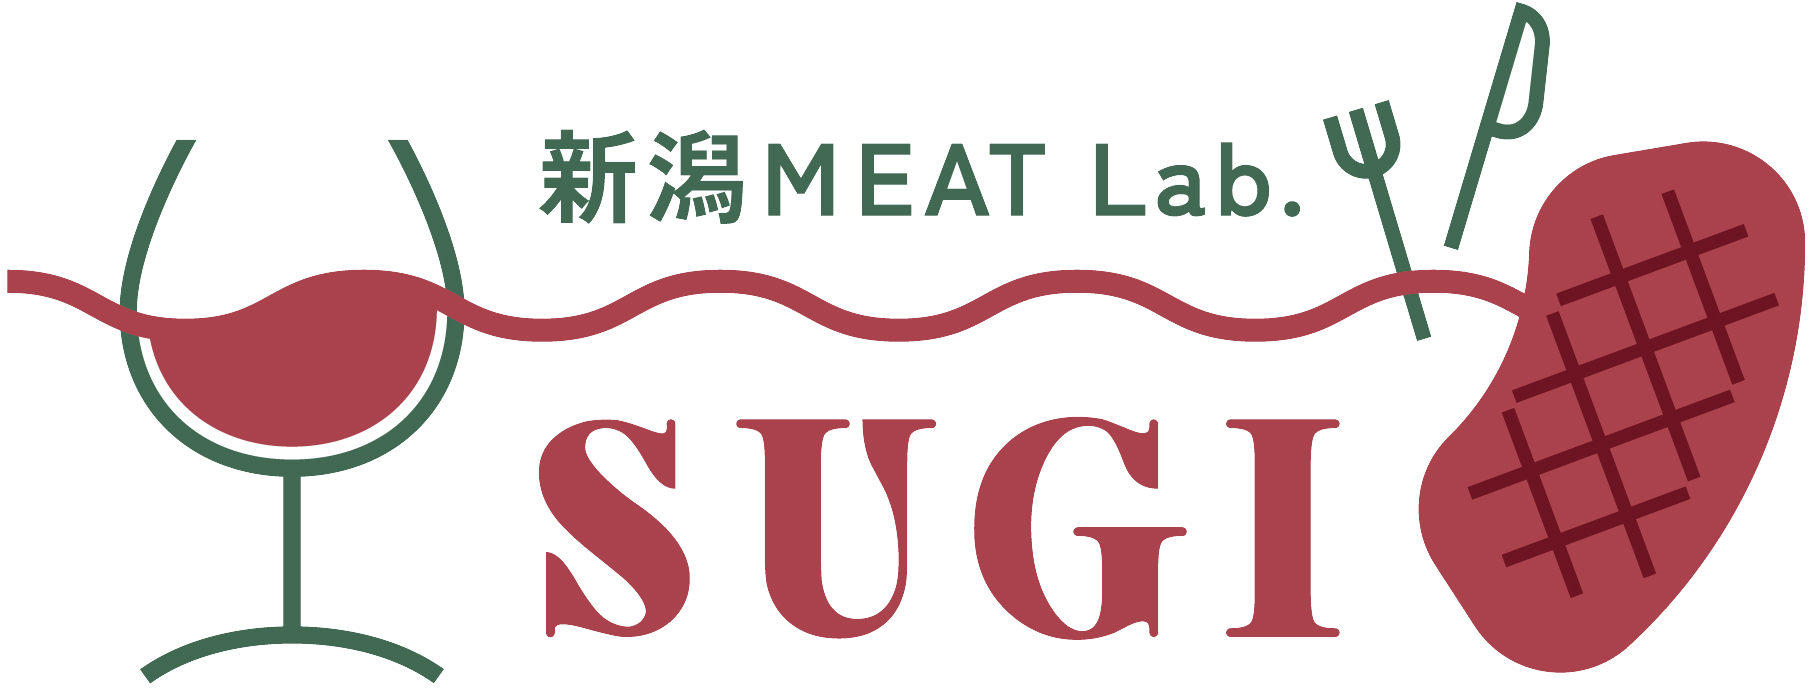 新潟MEAT Lab.SUGI